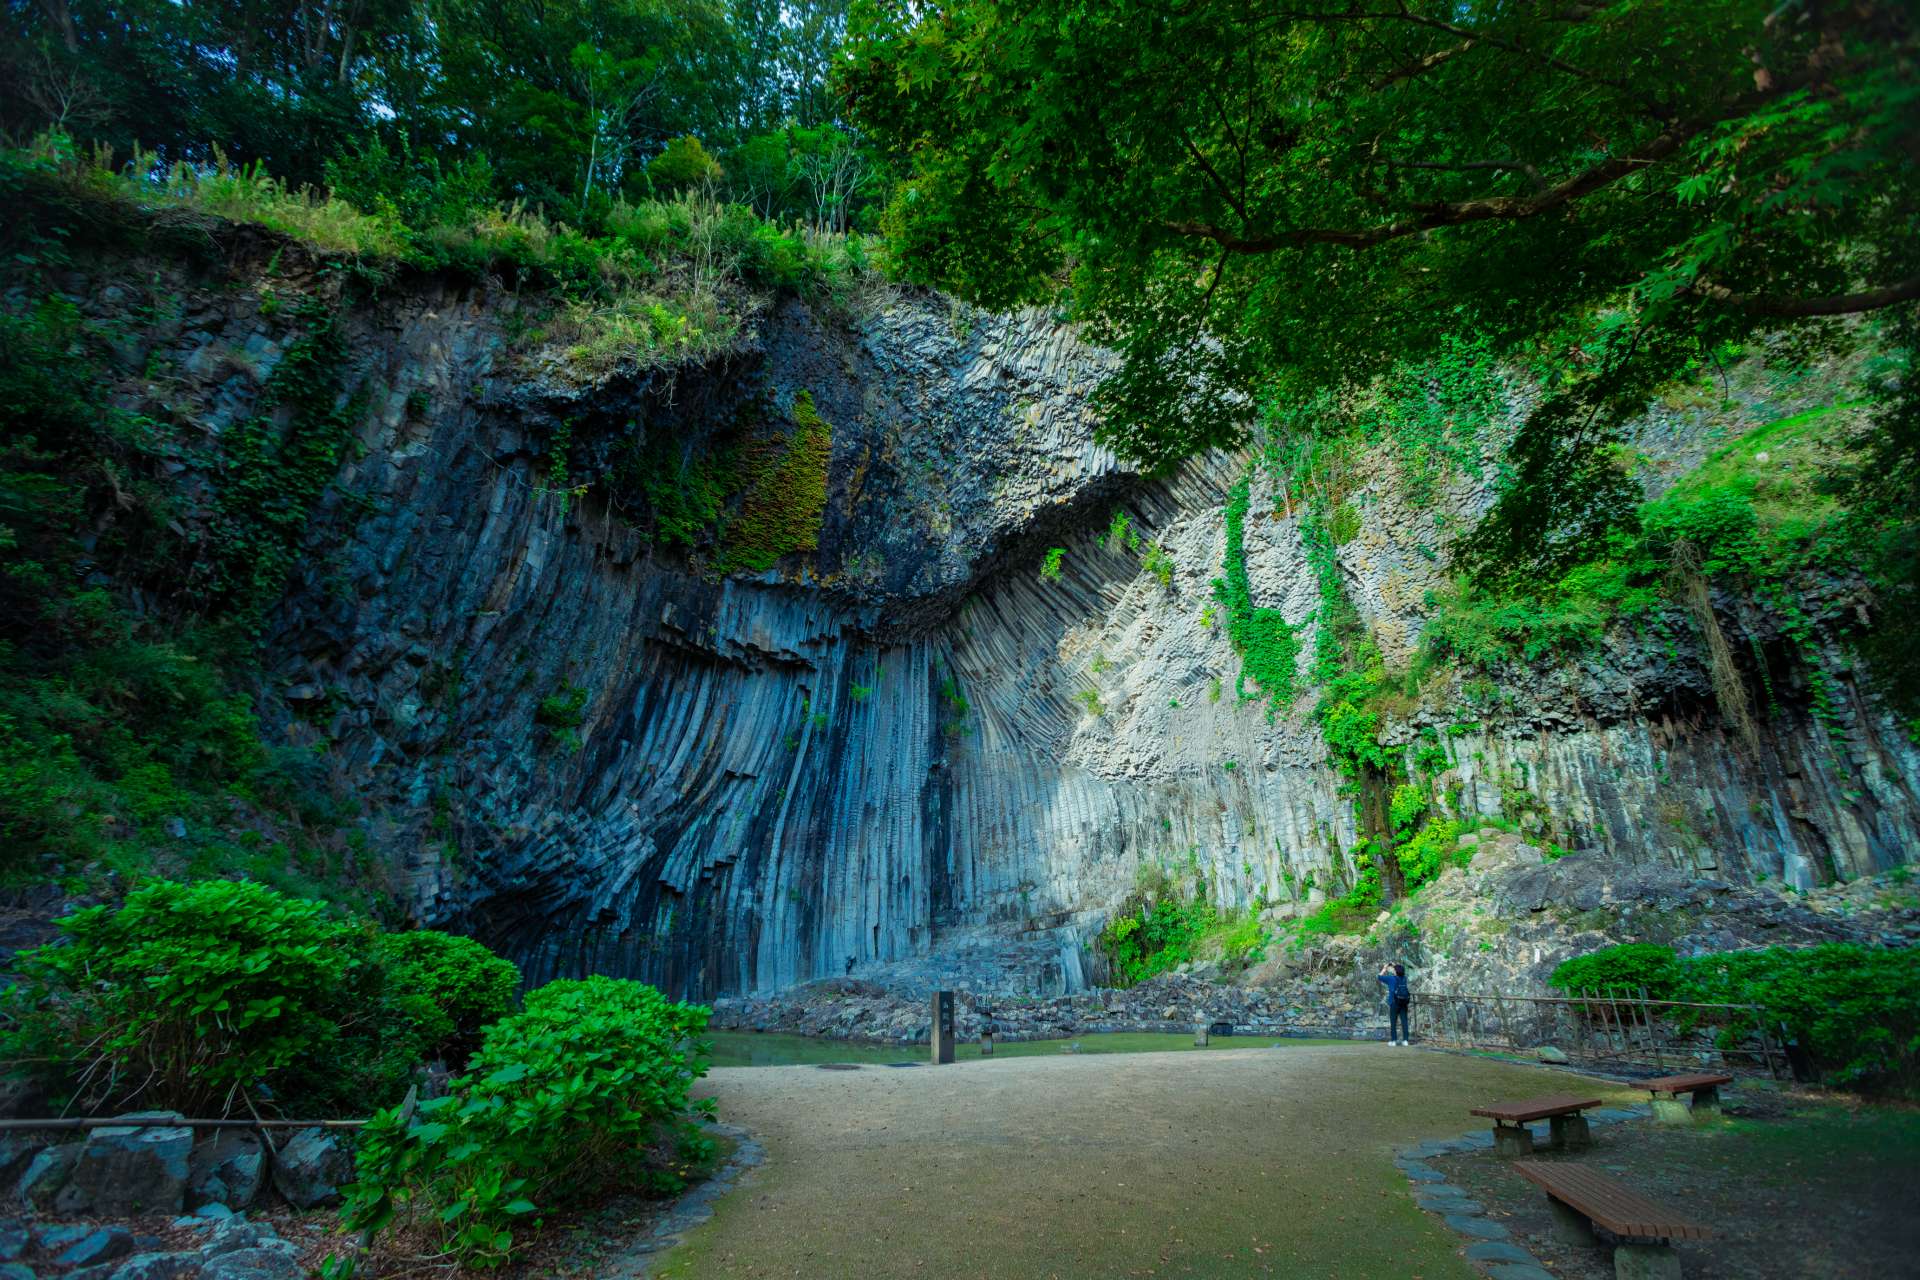 En el Parque Genbudo, también hay cuevas Seiryudo, cuevas Byakkodo y cuevas Suzakudo.